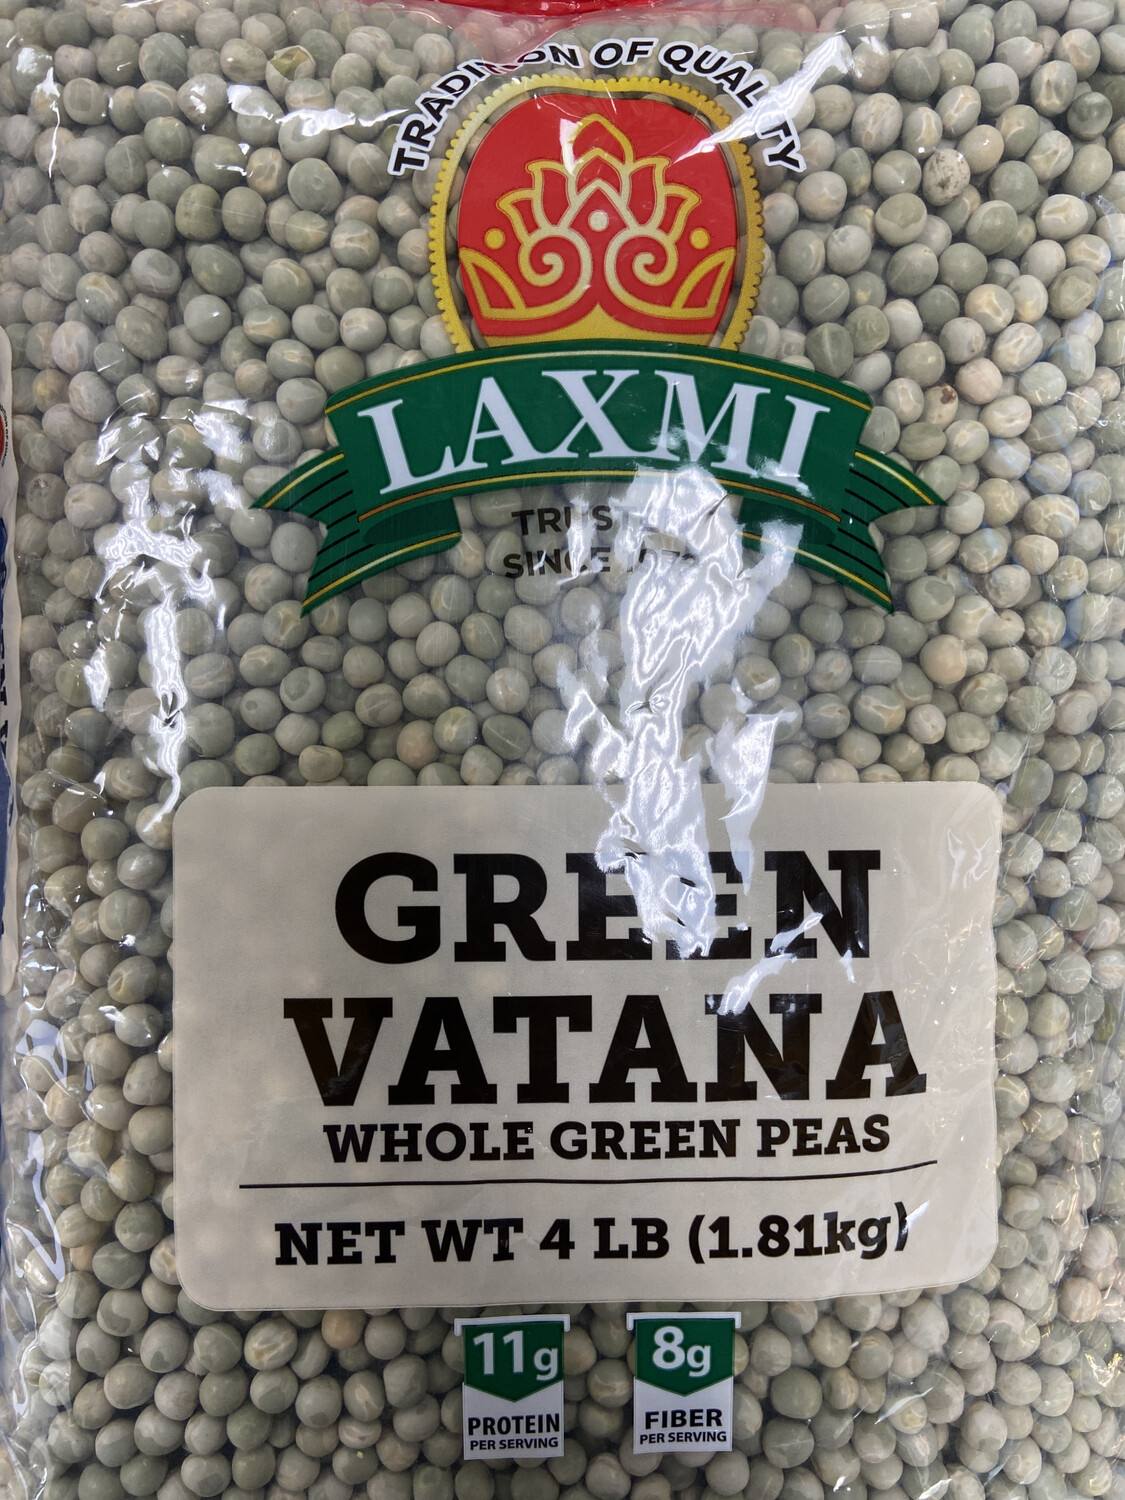 Laxmi Green Vatana 4lb